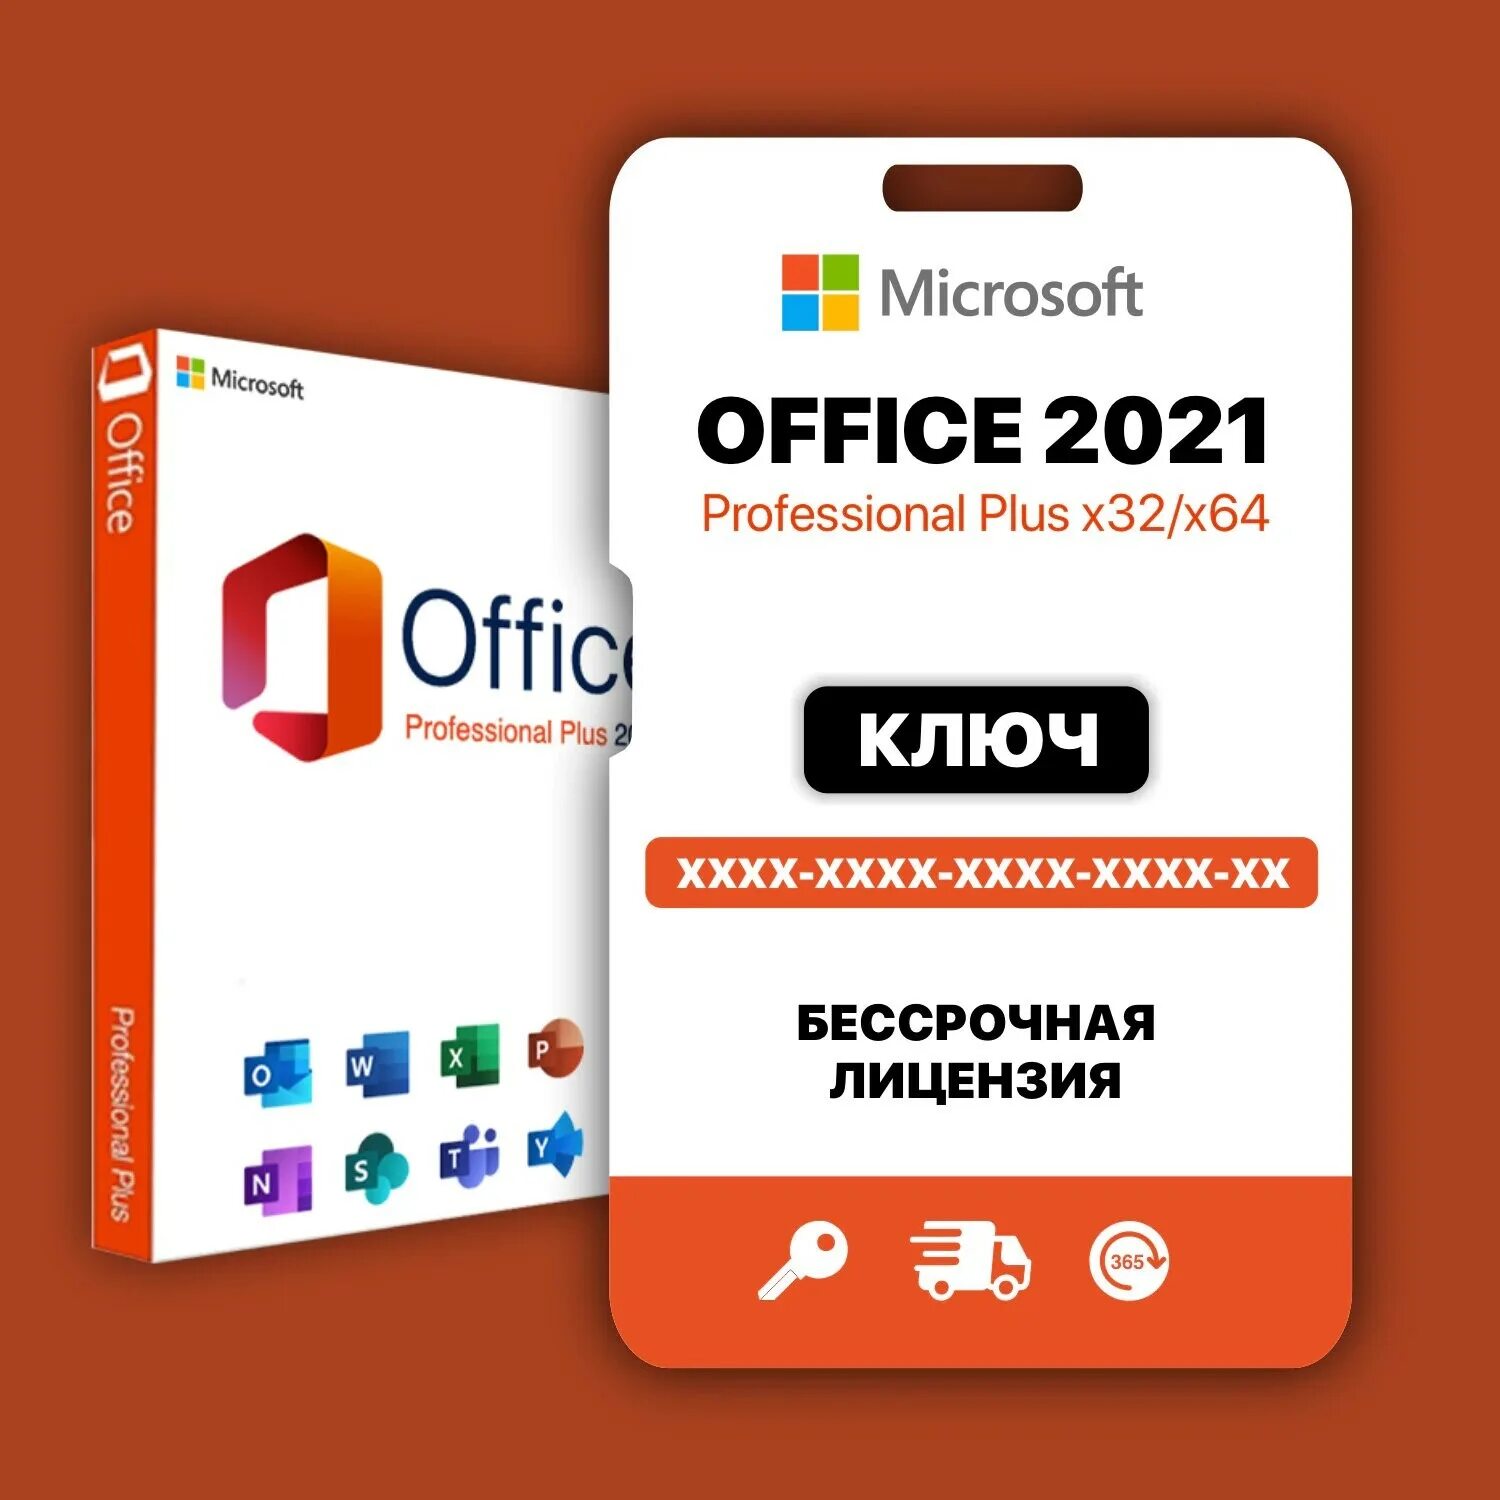 Купить офис бессрочная лицензия. Office 2021 Pro Plus. Office 2021 Pro Plus logo. Ключ активации Microsoft 365 2019 профессионал плюс лицензионный ключ. WHATBOT Plus activation Key.